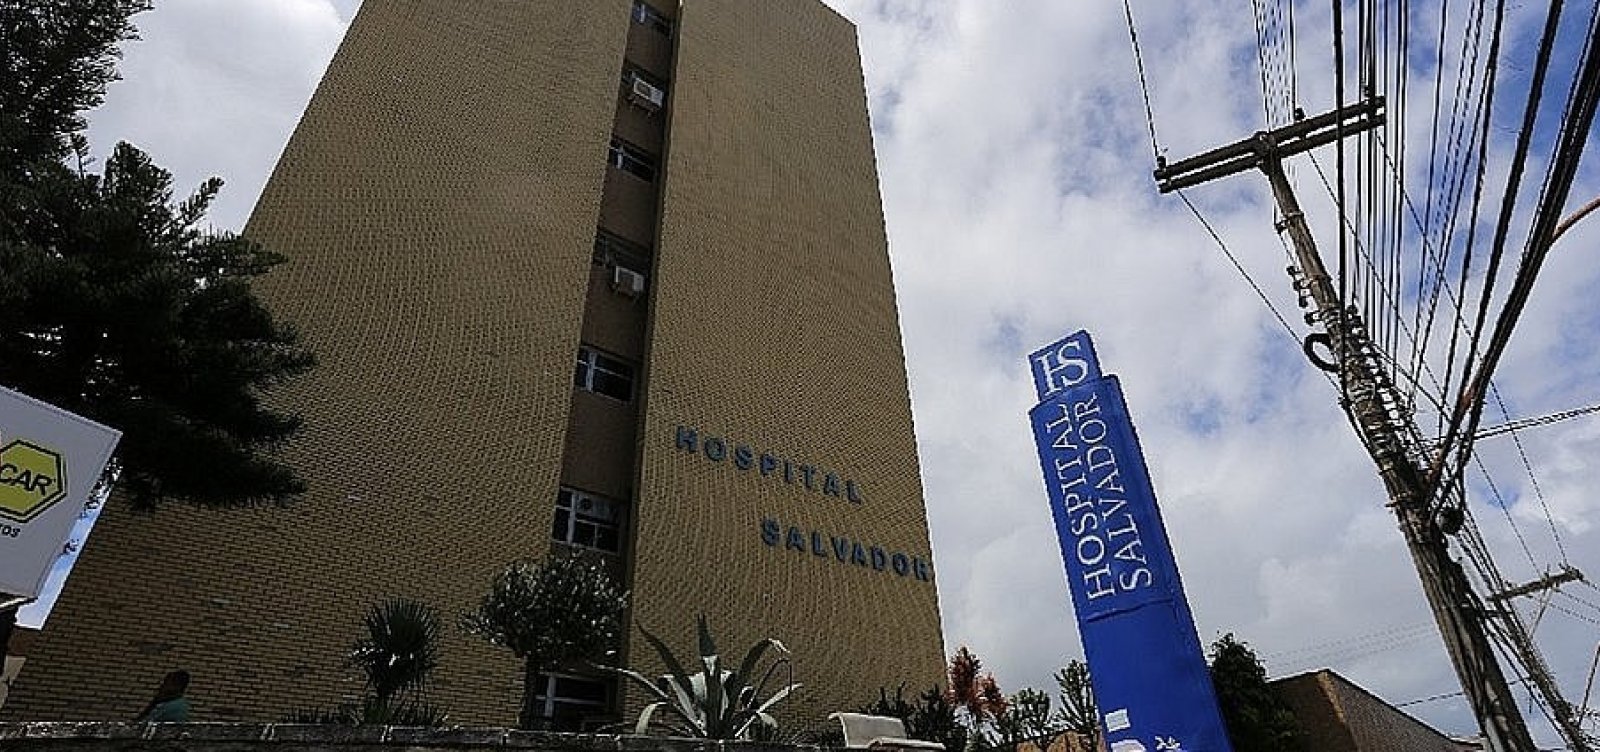 Prefeitura ganha disputa na Justiça contra Ufba e poderá utilizar Hospital Salvador